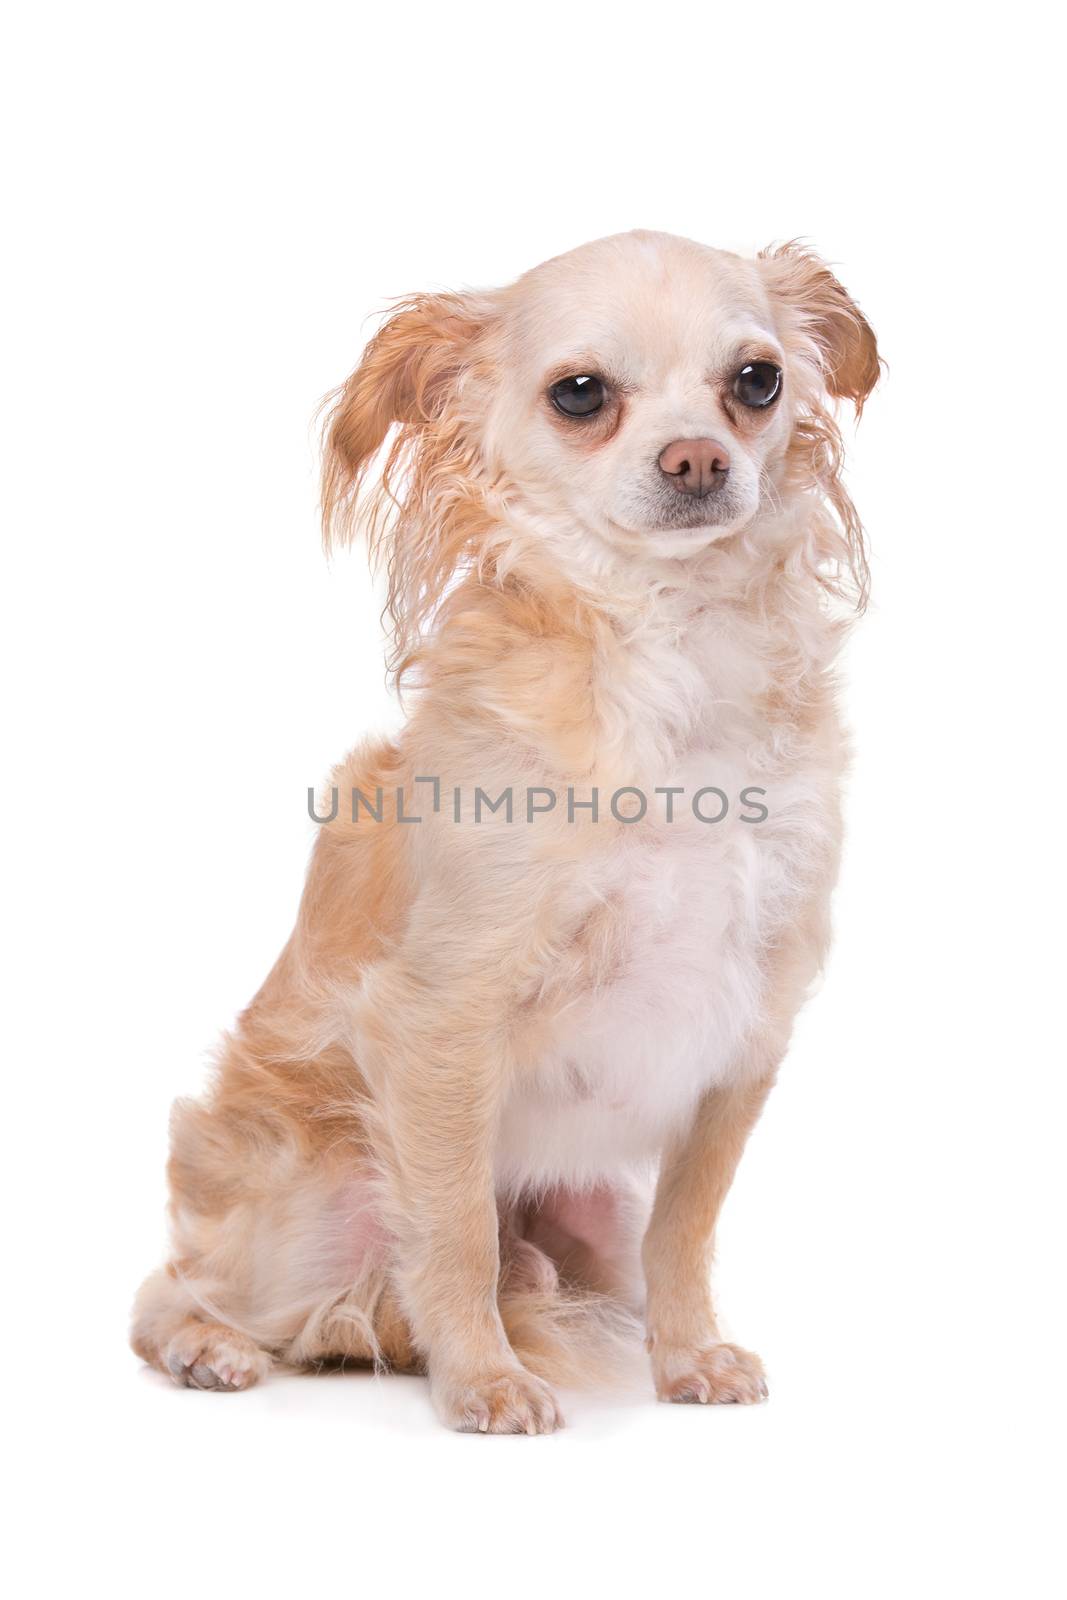 Mixed breed Chihuahua dog by eriklam